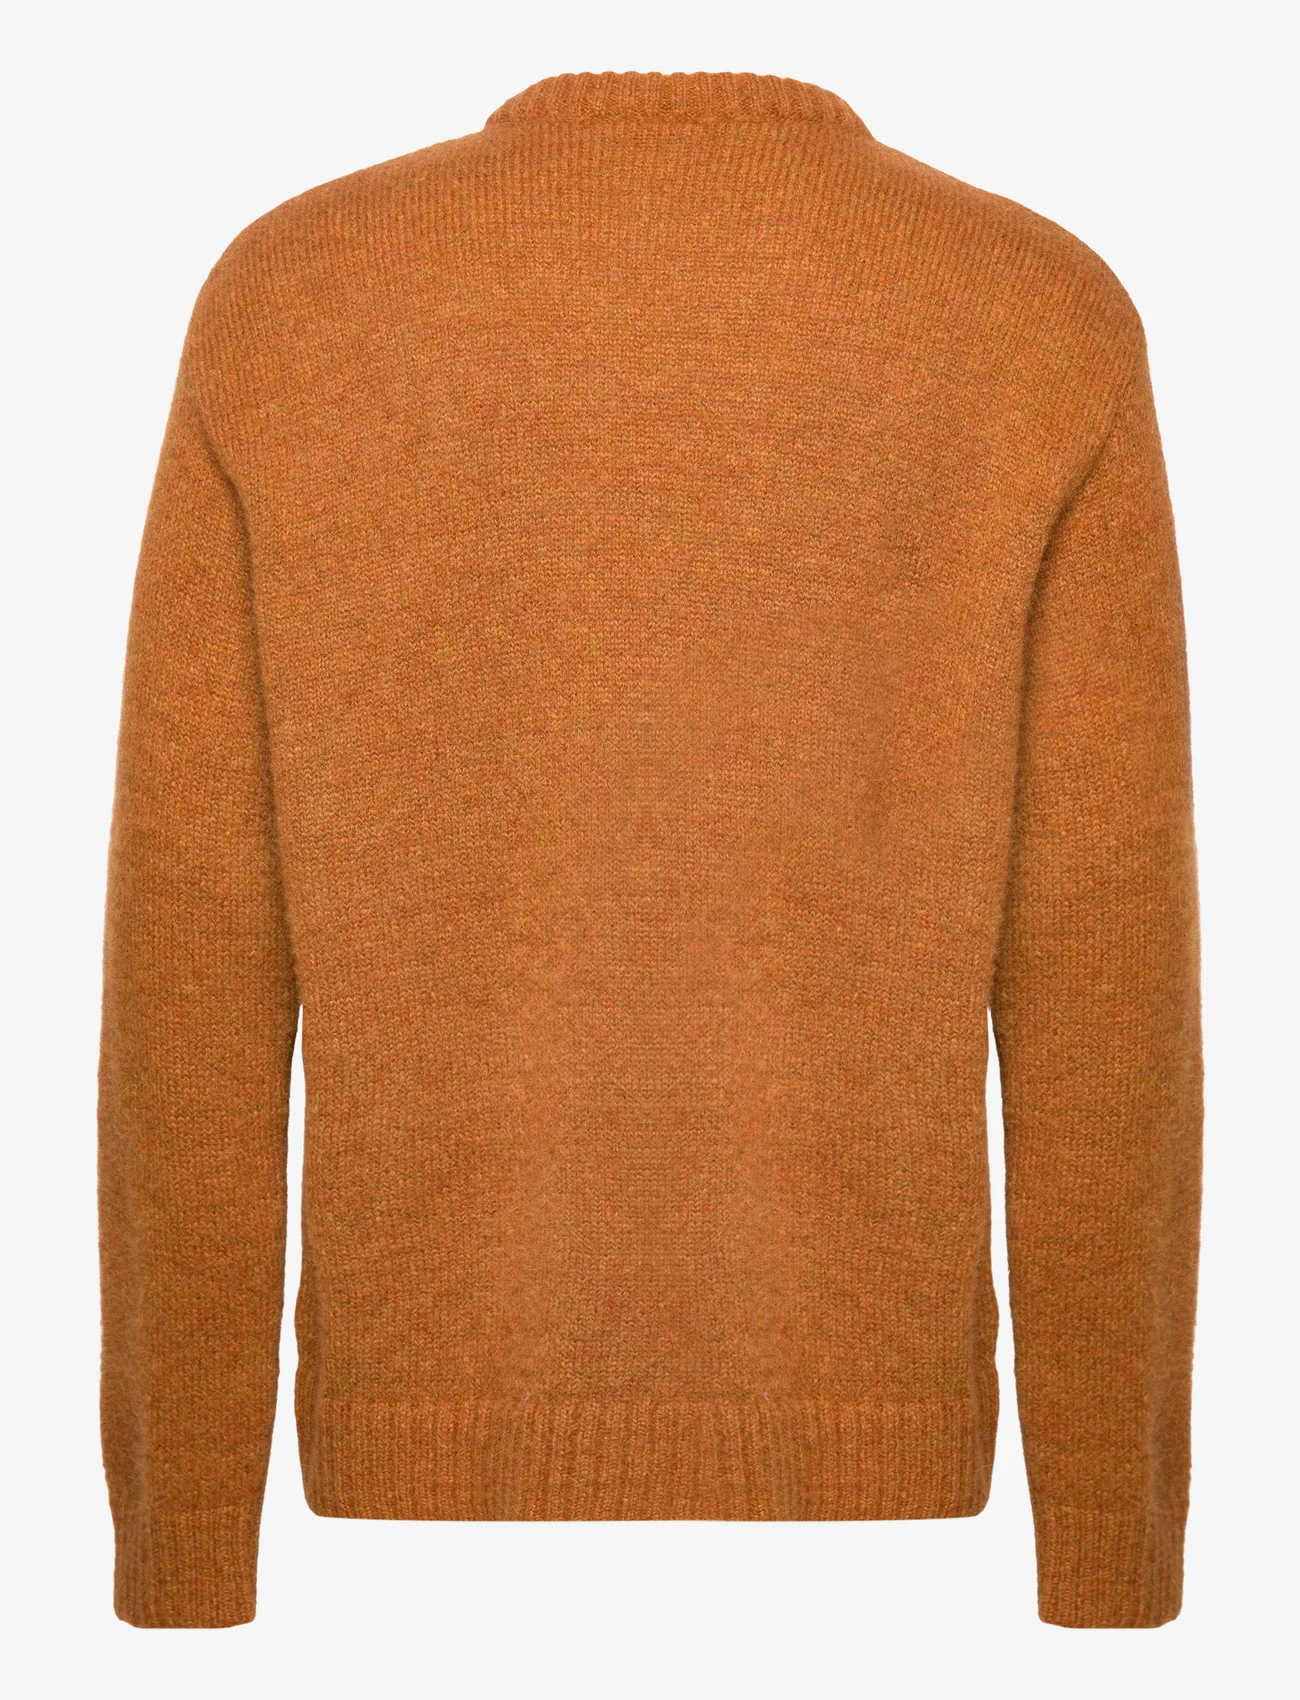 Hope - Oversized Crew-Neck Sweater - truien met ronde hals - pumpkin melange - 1